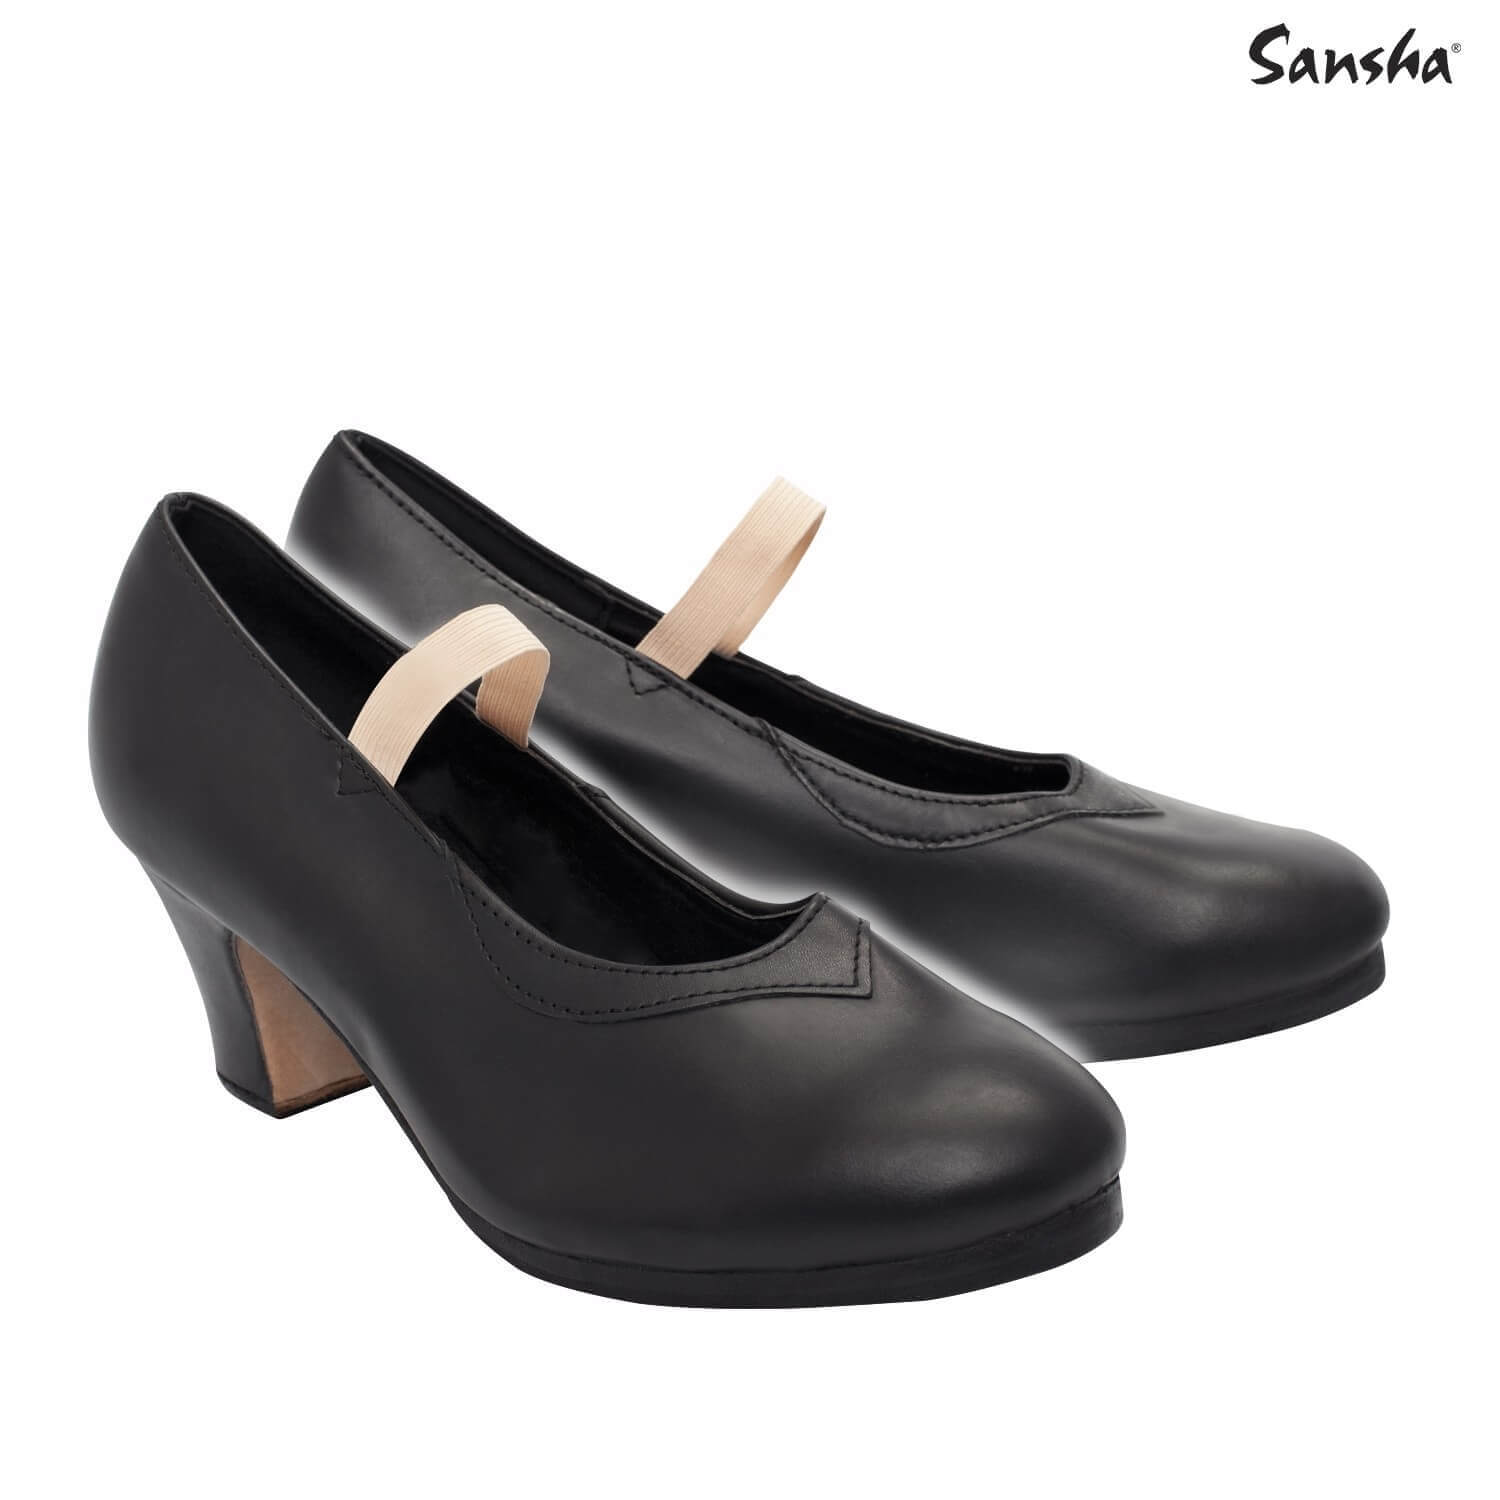 Sansha "SARAGOSA" Original flamenco shoes - Click Image to Close